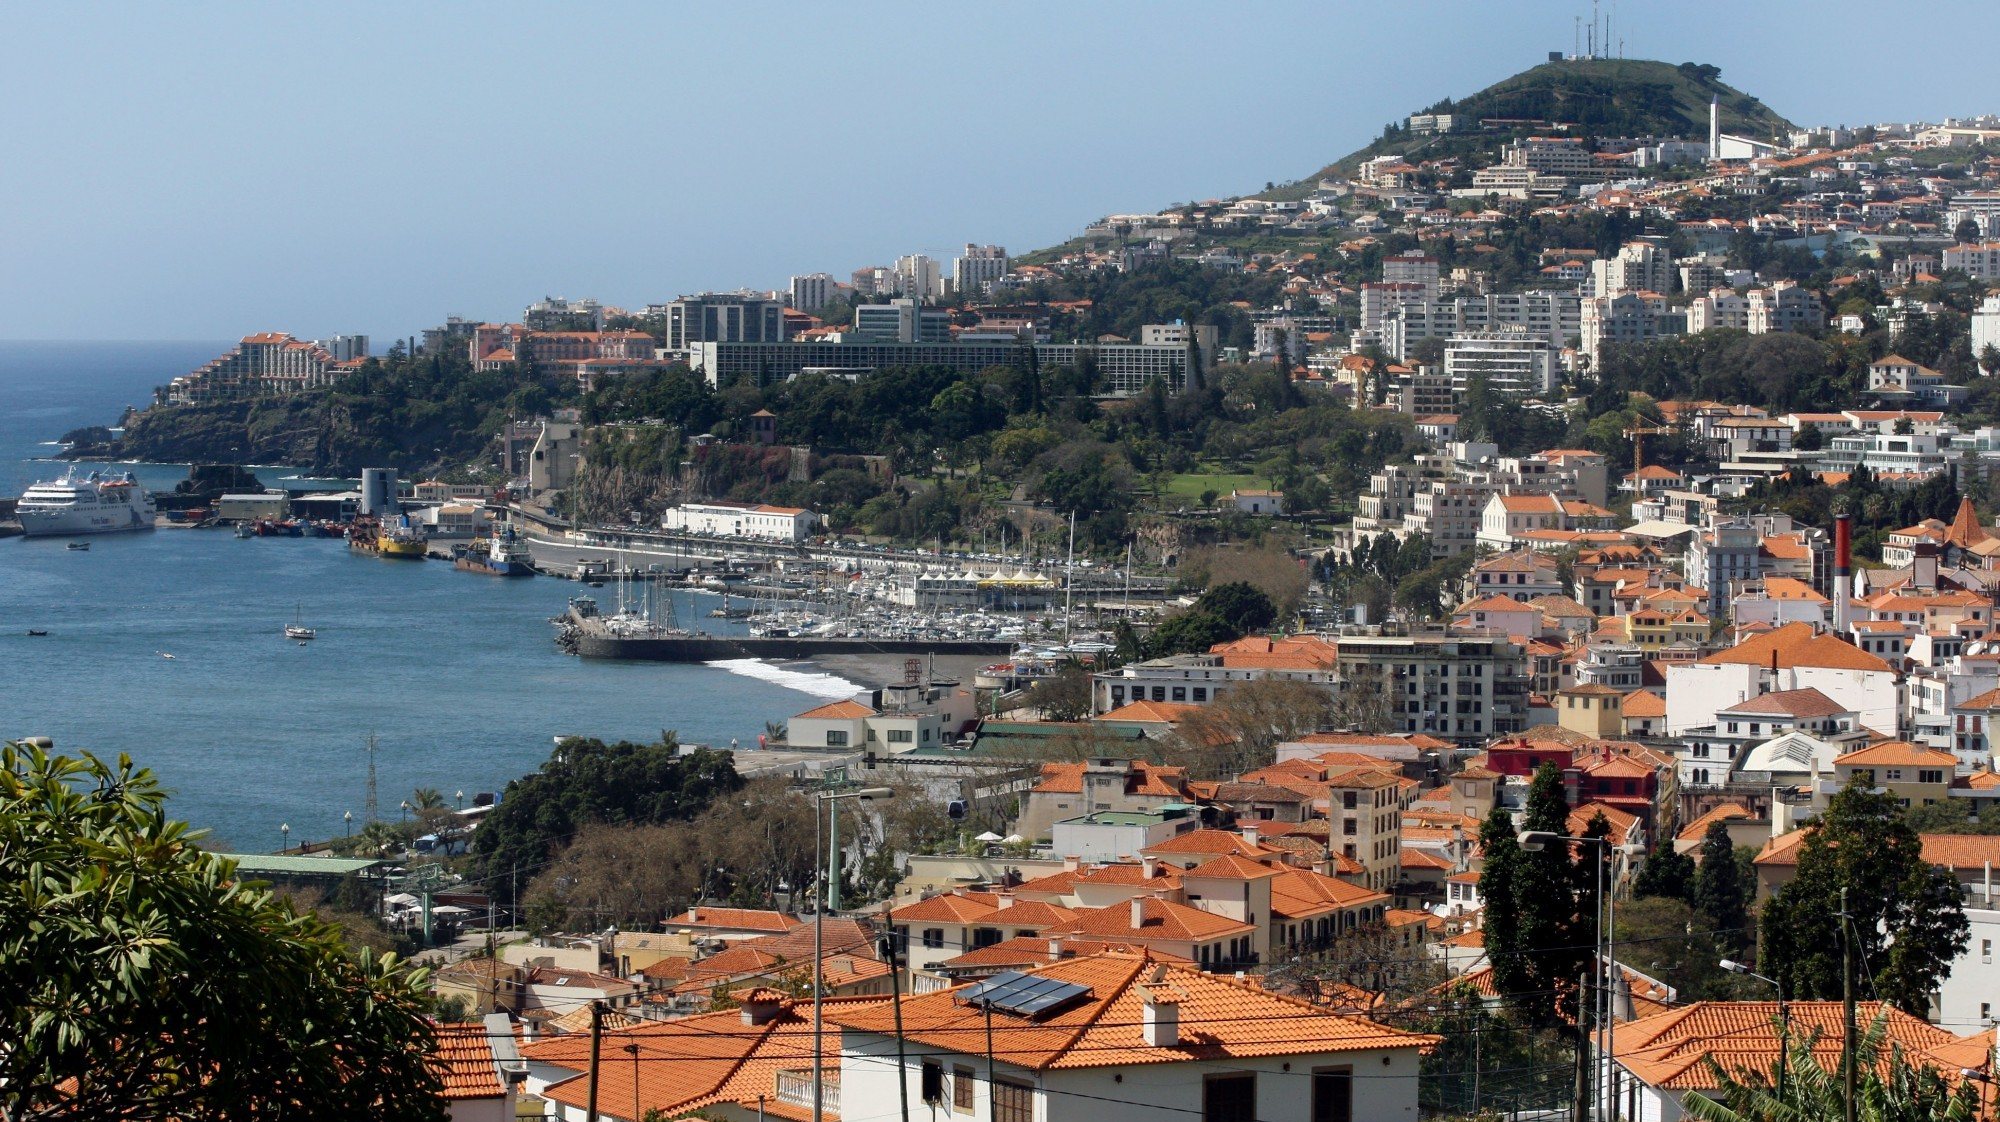 A taxa de ocupação global para a Páscoa no arquipélago da Madeira situa-se nos 85%, ligeiramente inferior à prevista na sondagem desenvolvida no ano passado para o mesmo período festivo, que foi de 83%